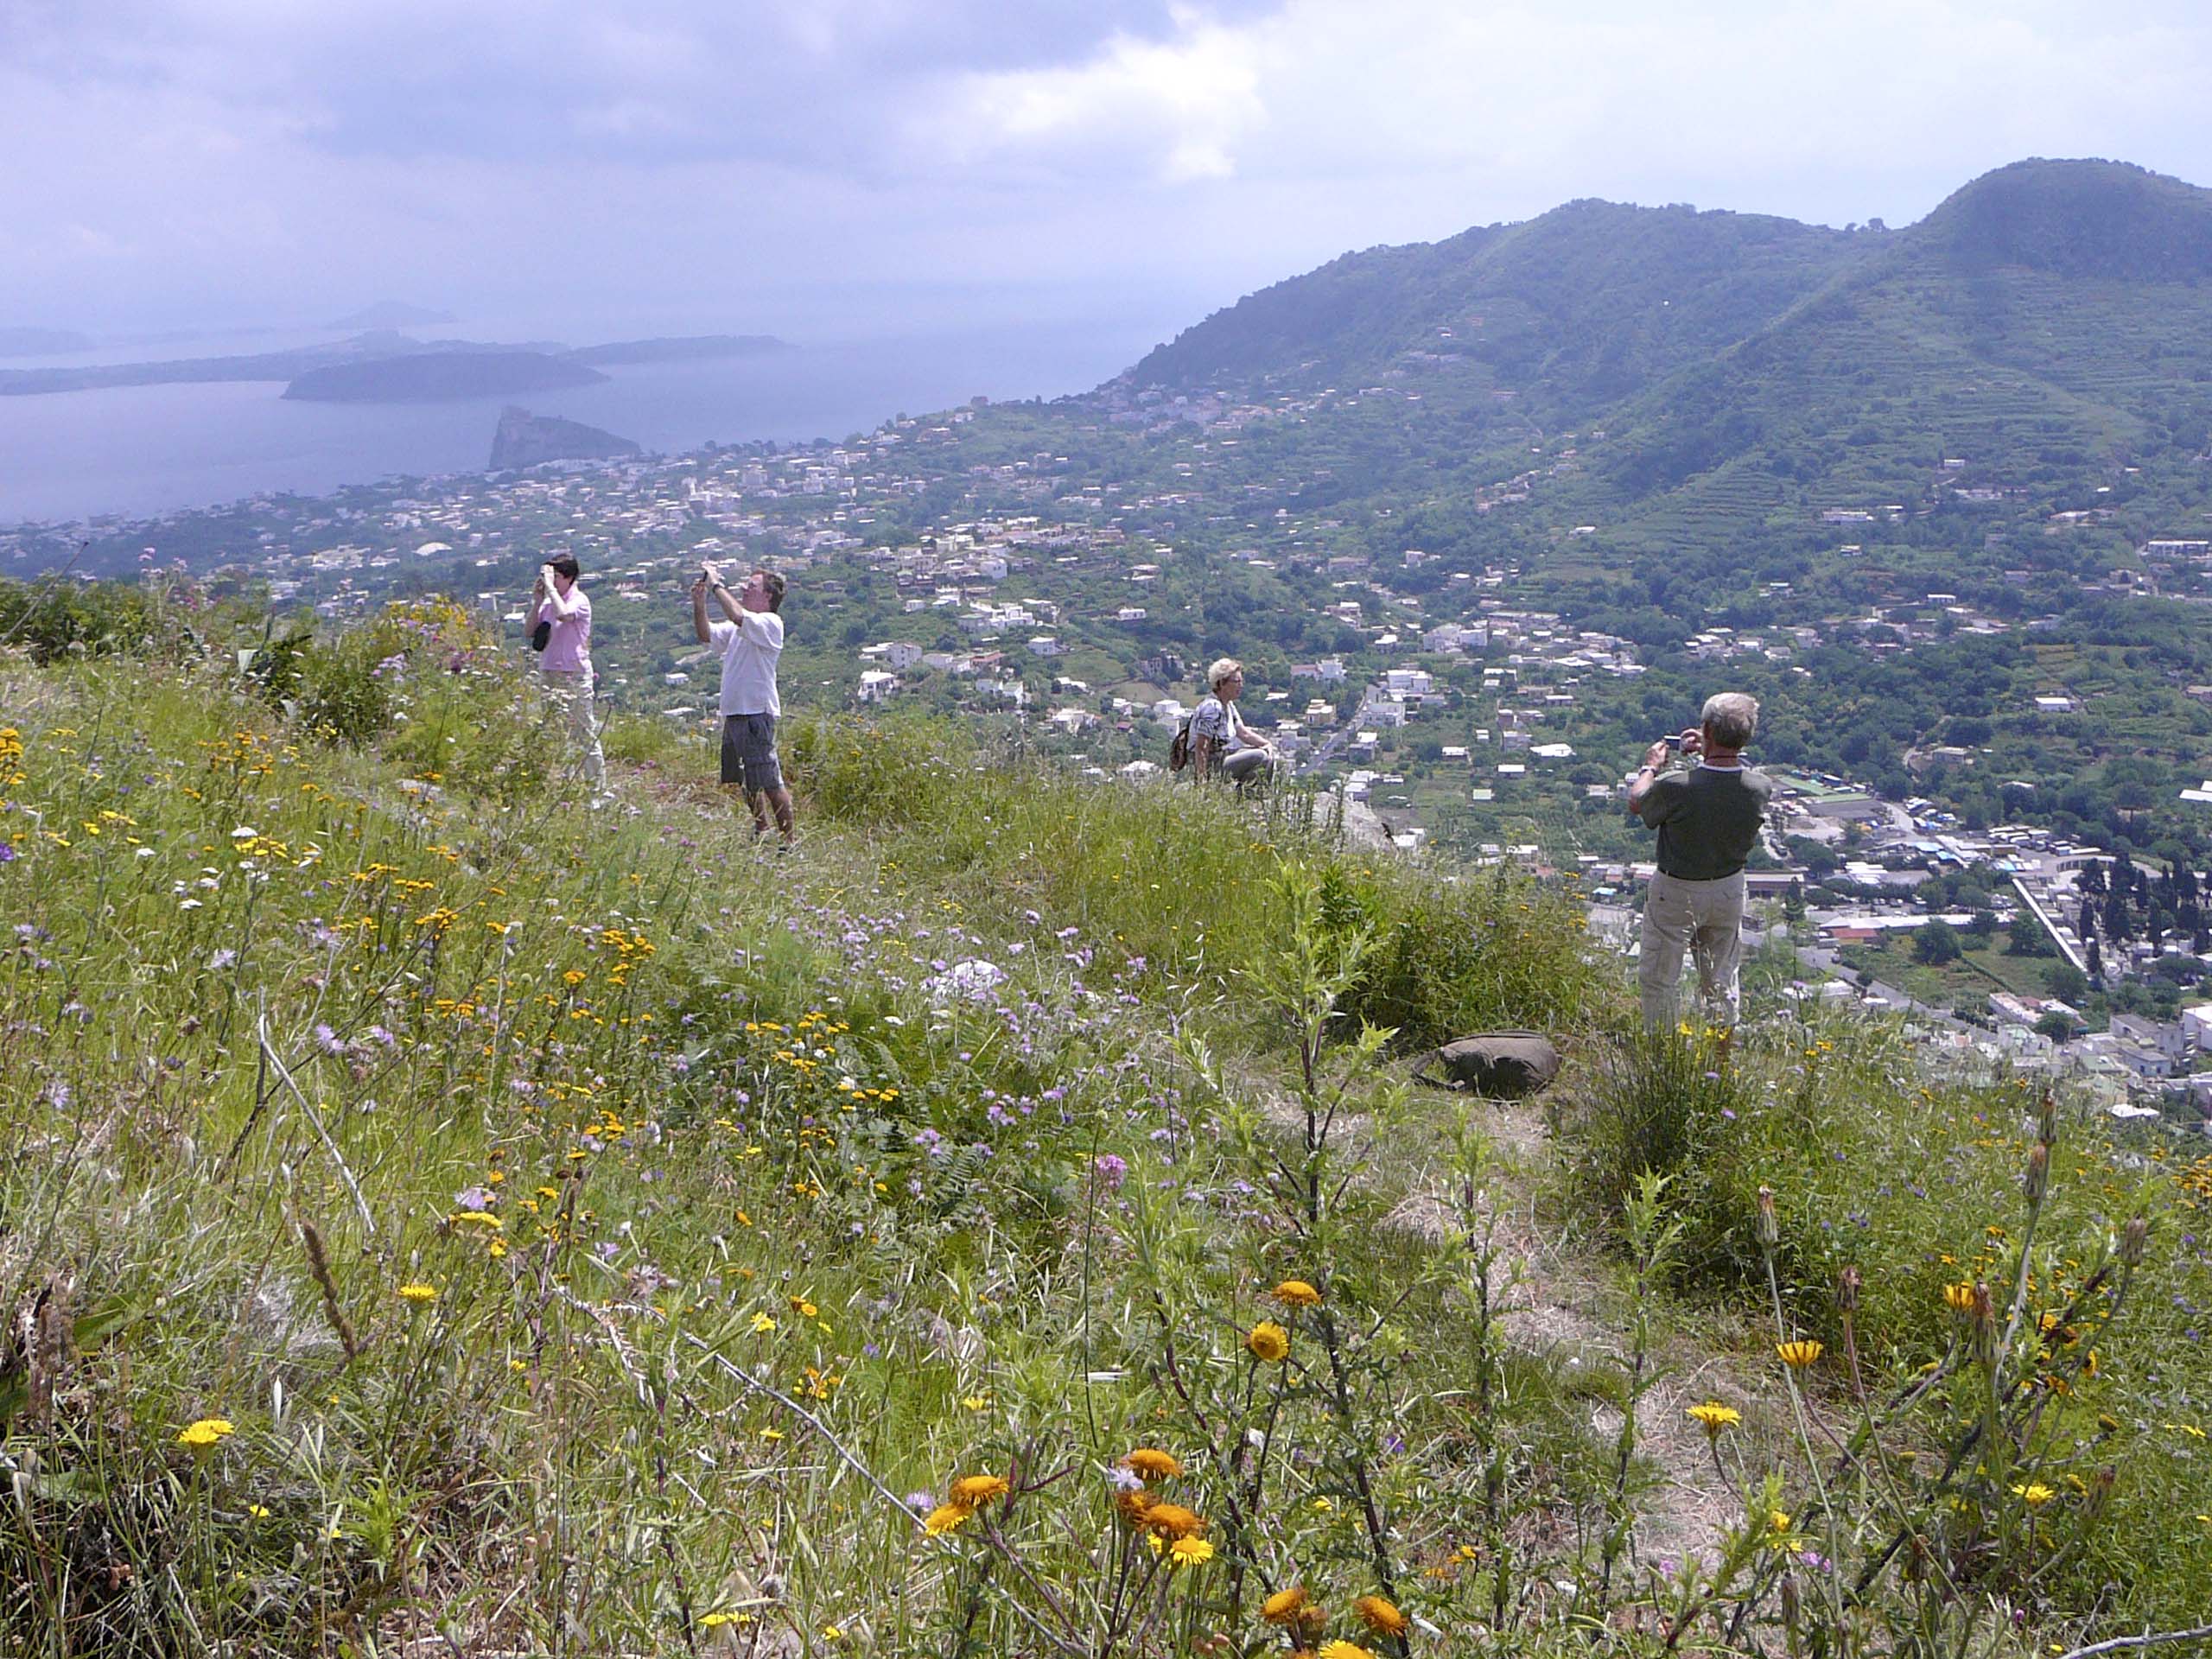 Ischia. Wandern in Wandergruppe mit Wanderführer auf den Wanderwege der Insel